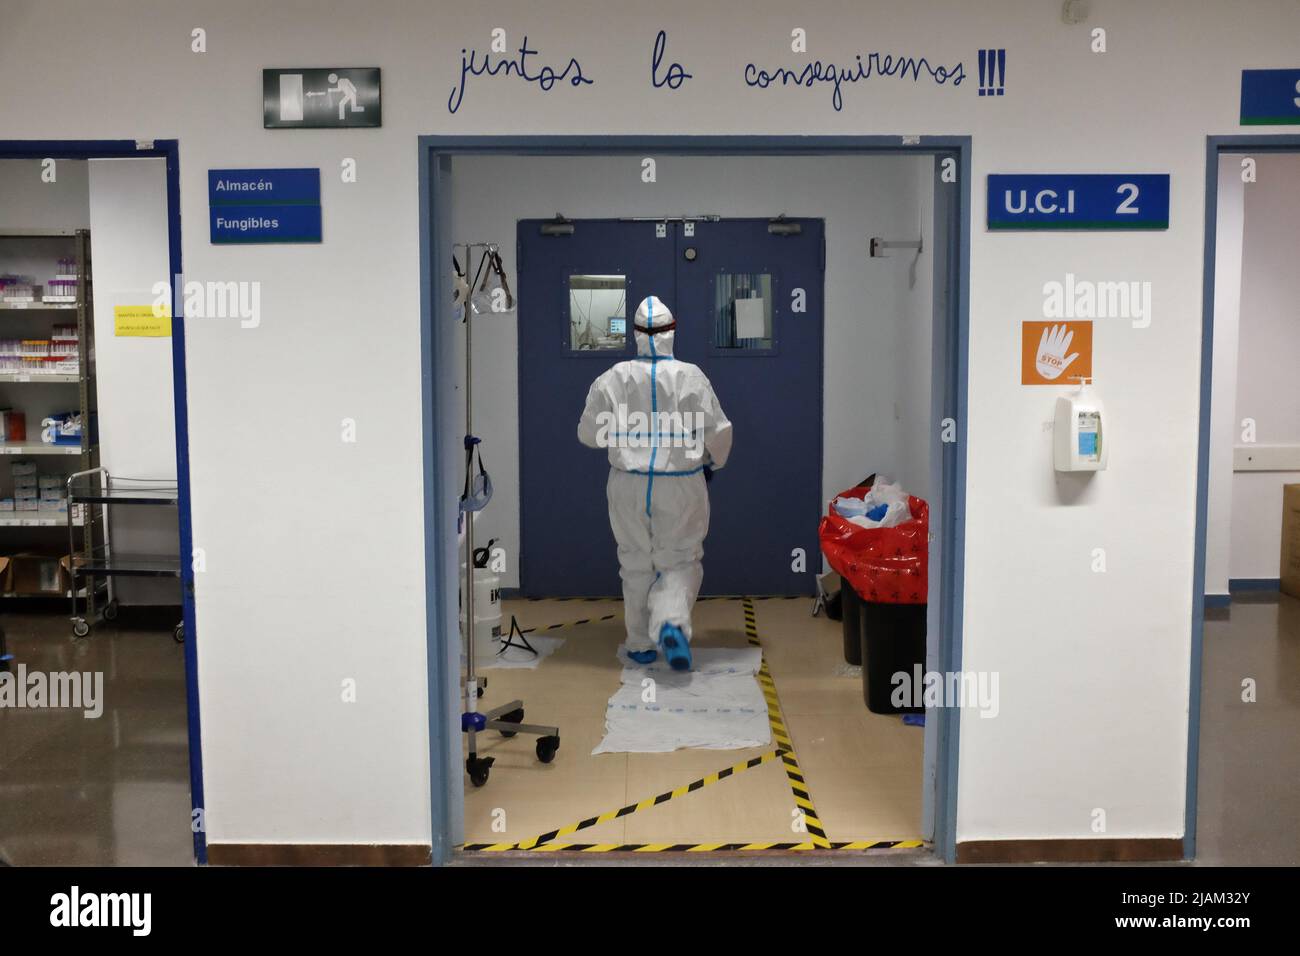 Un infermiere che entra nell'unità di terapia intensiva dell'ospedale Severo Ochoa di Madrid, Spagna, durante la pandemia. Foto Stock